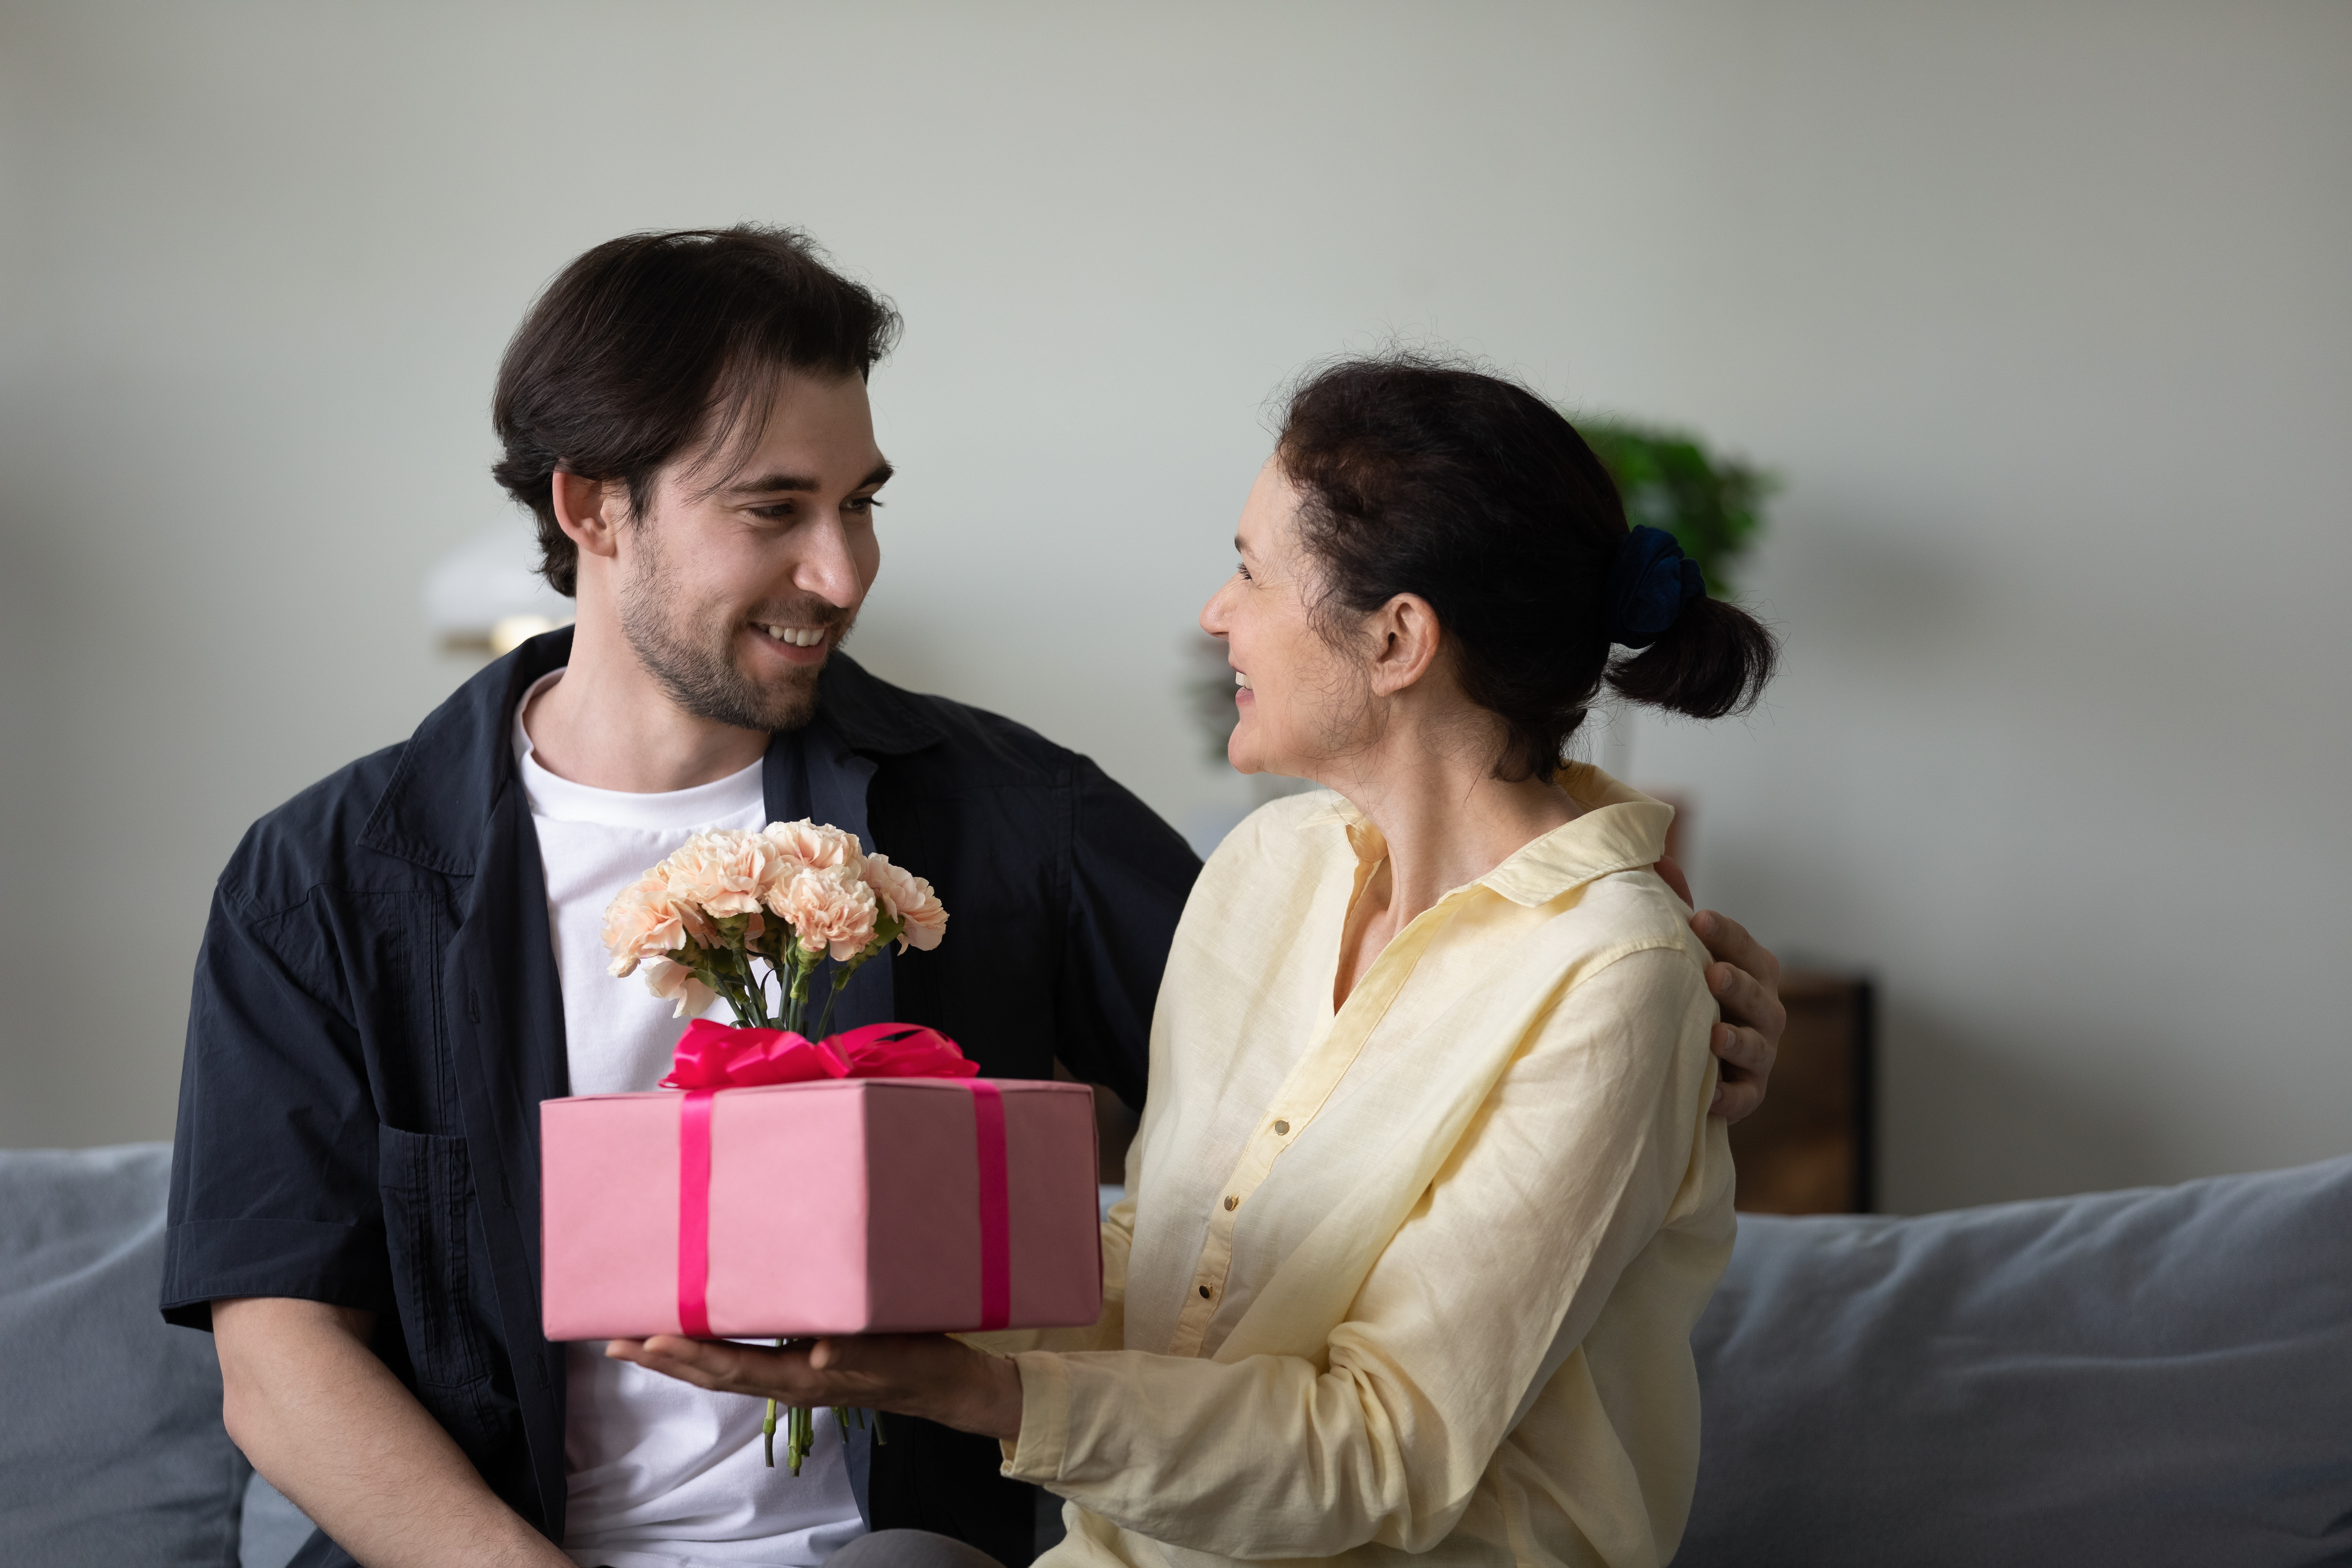 Una mujer mayor haciendo un regalo a un hombre | Fuente: Shutterstock